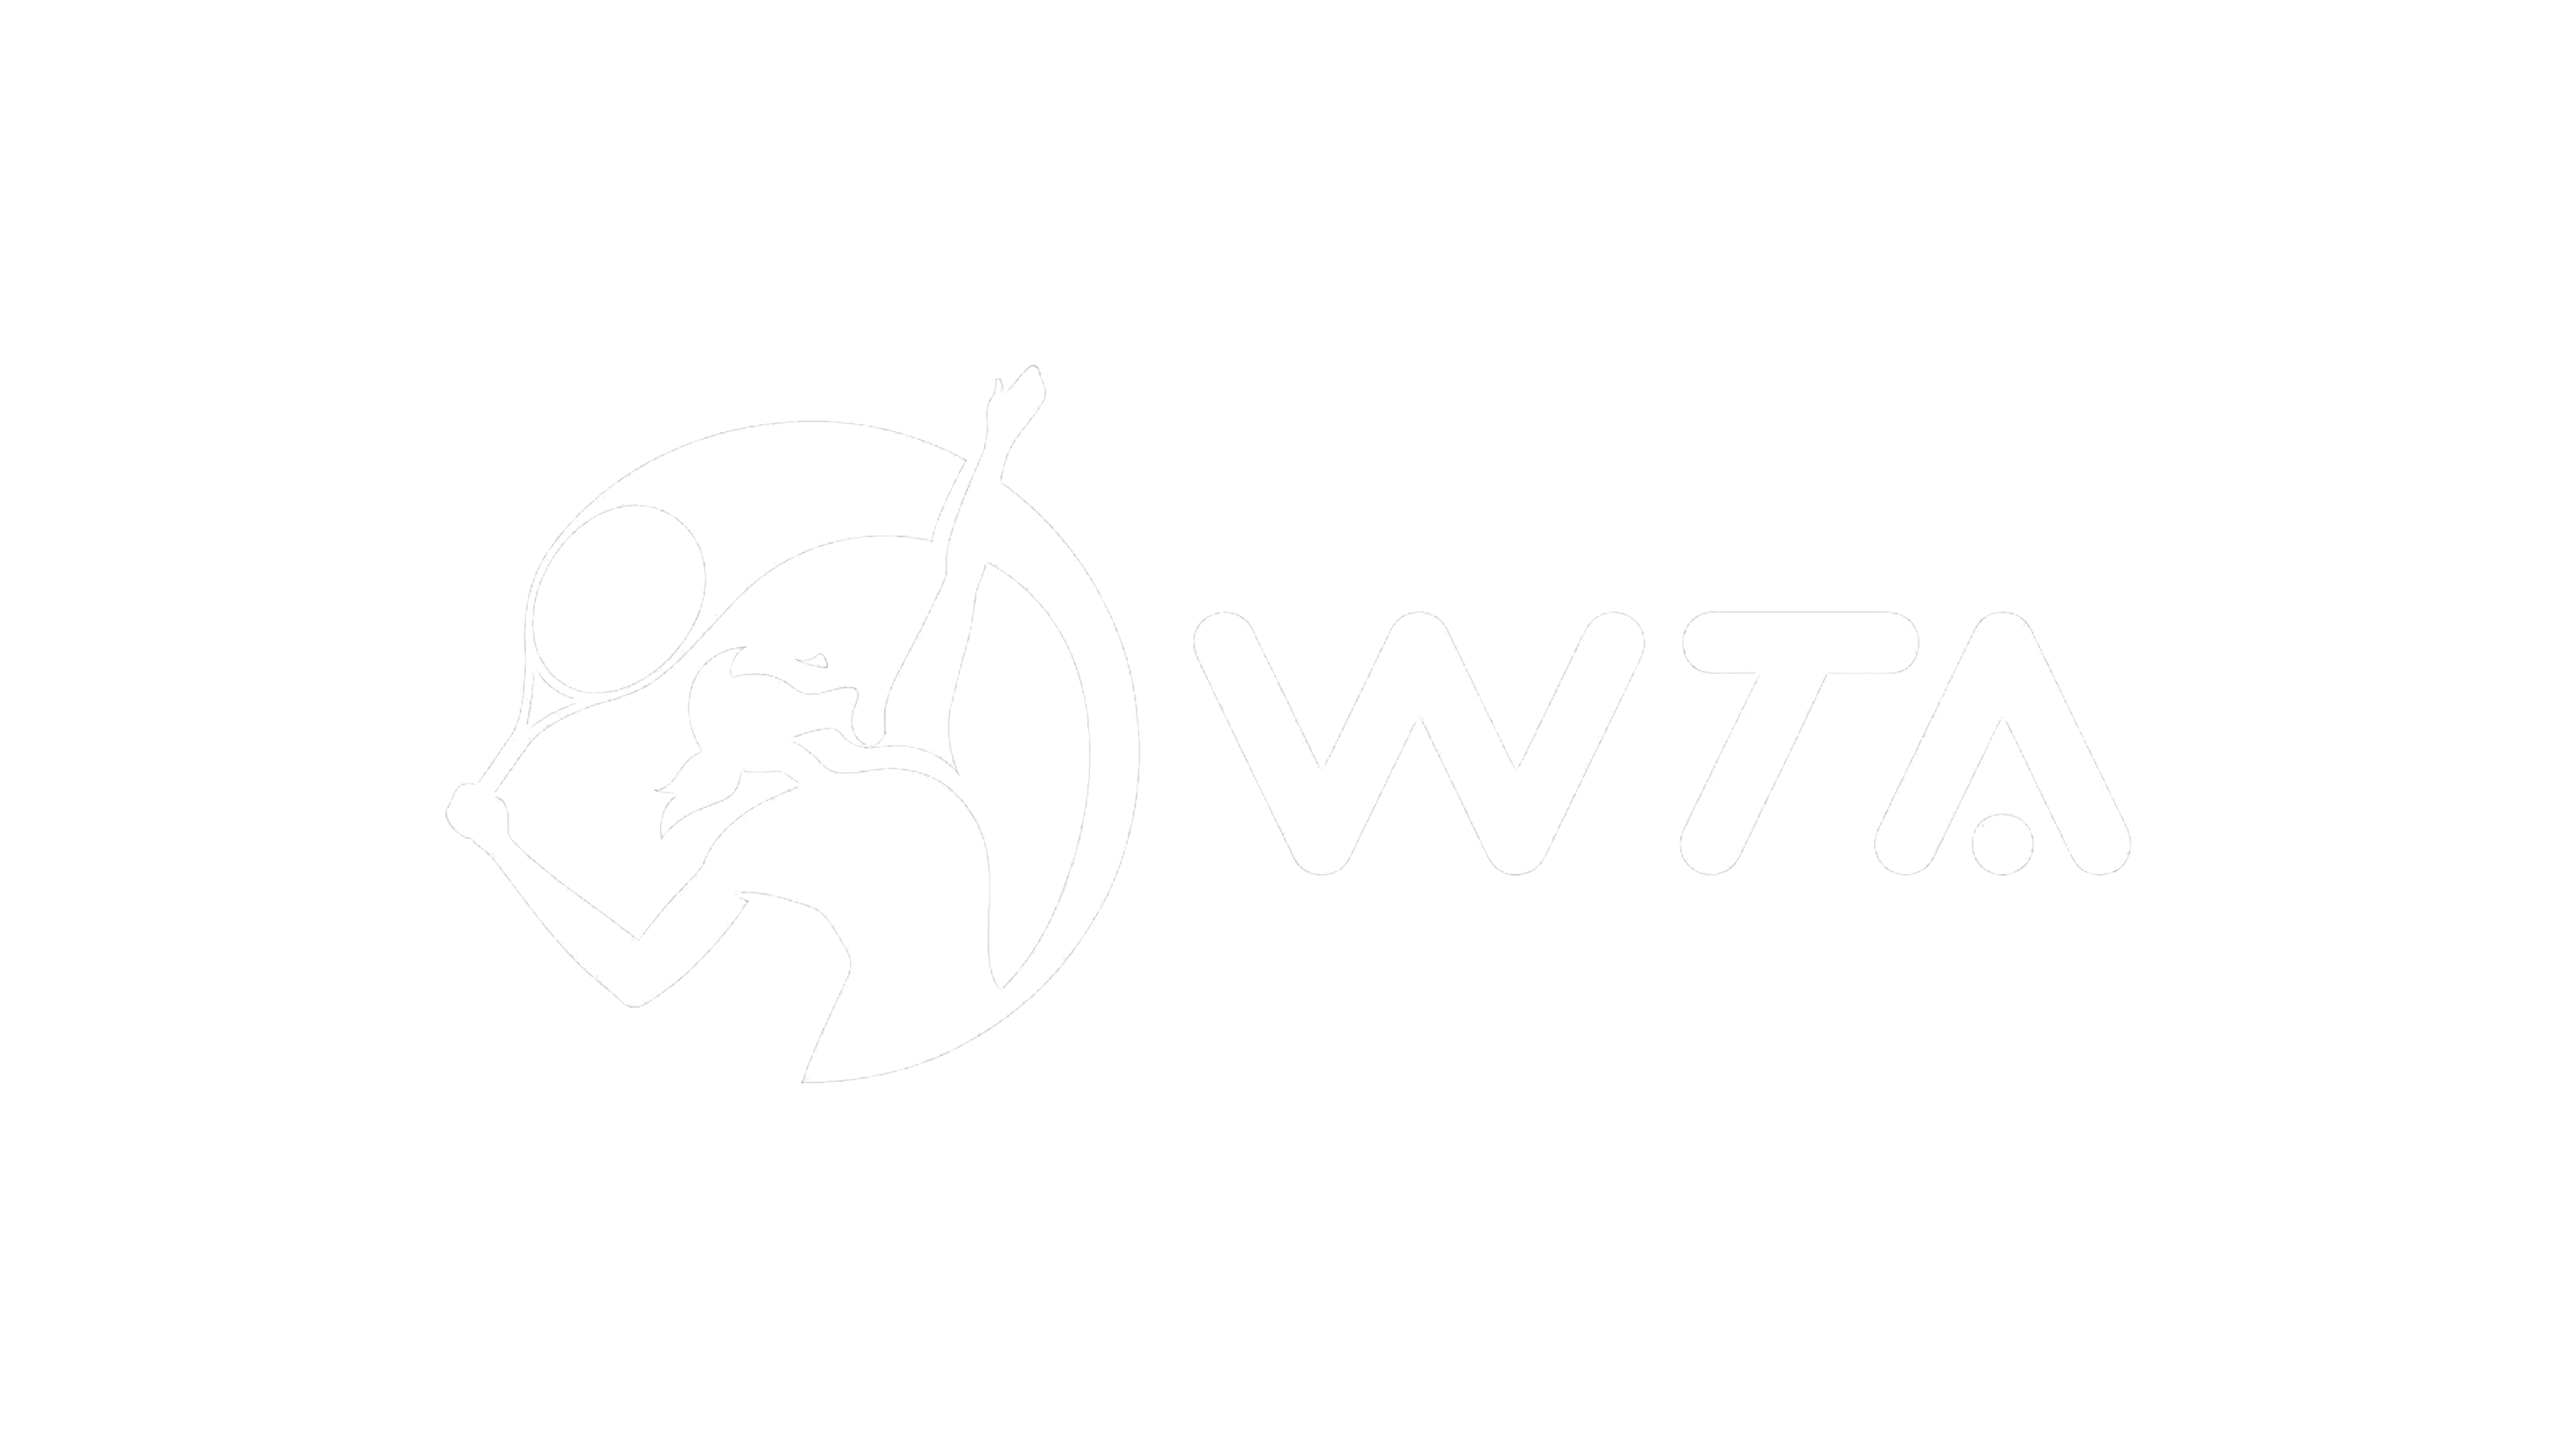 World Tennis Association Events